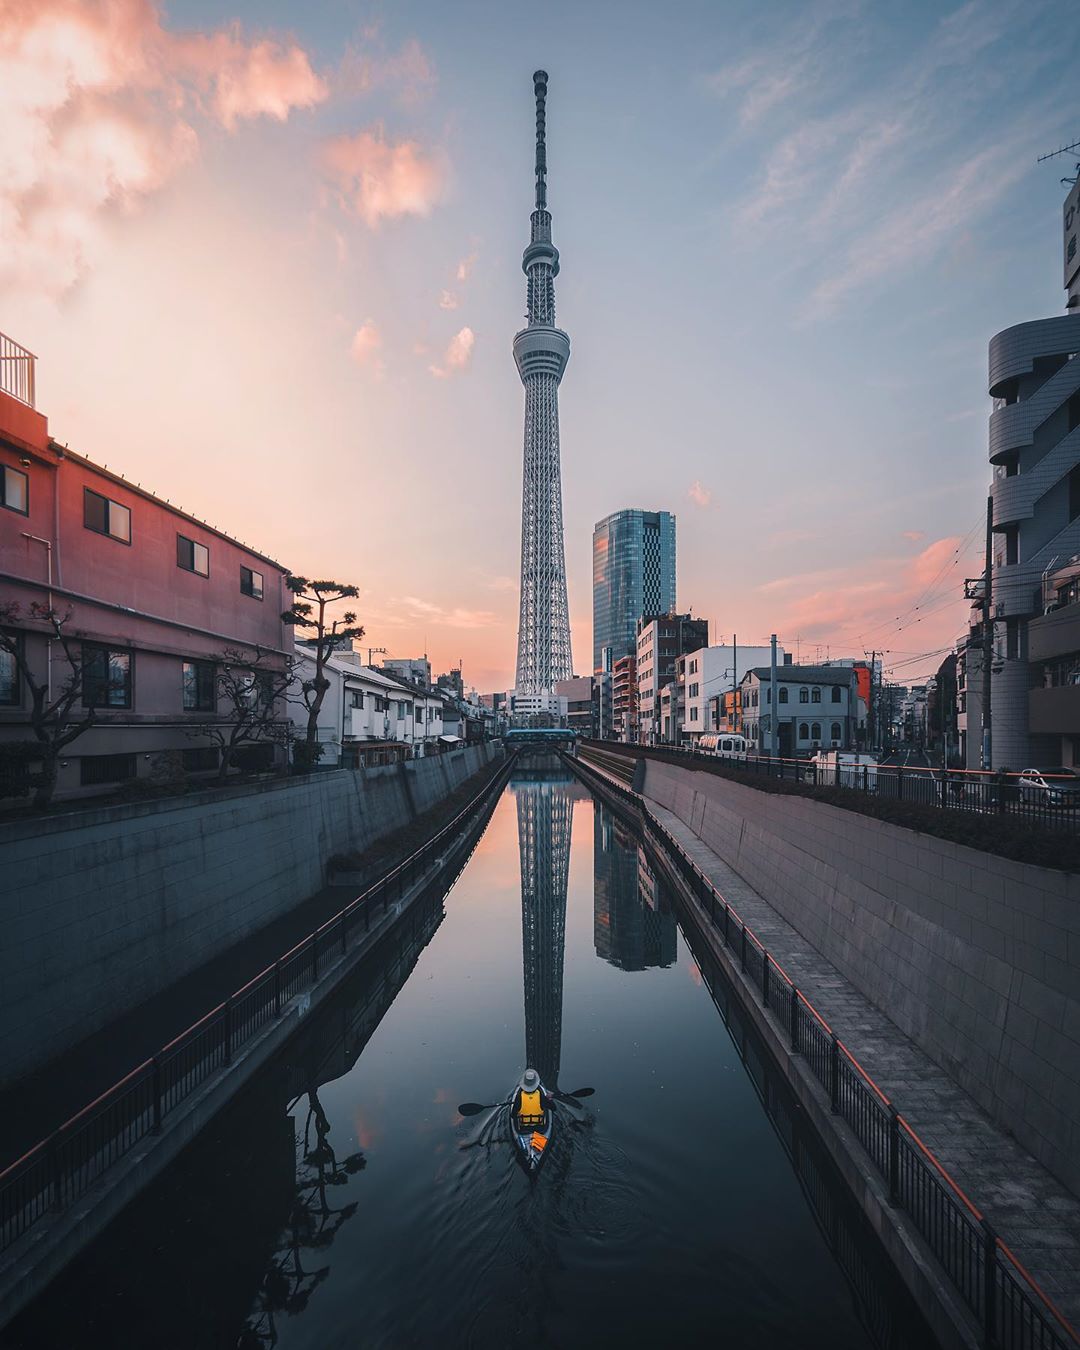 Архитектура и улицы Японии на снимках Джеймса Такуми Шегуна